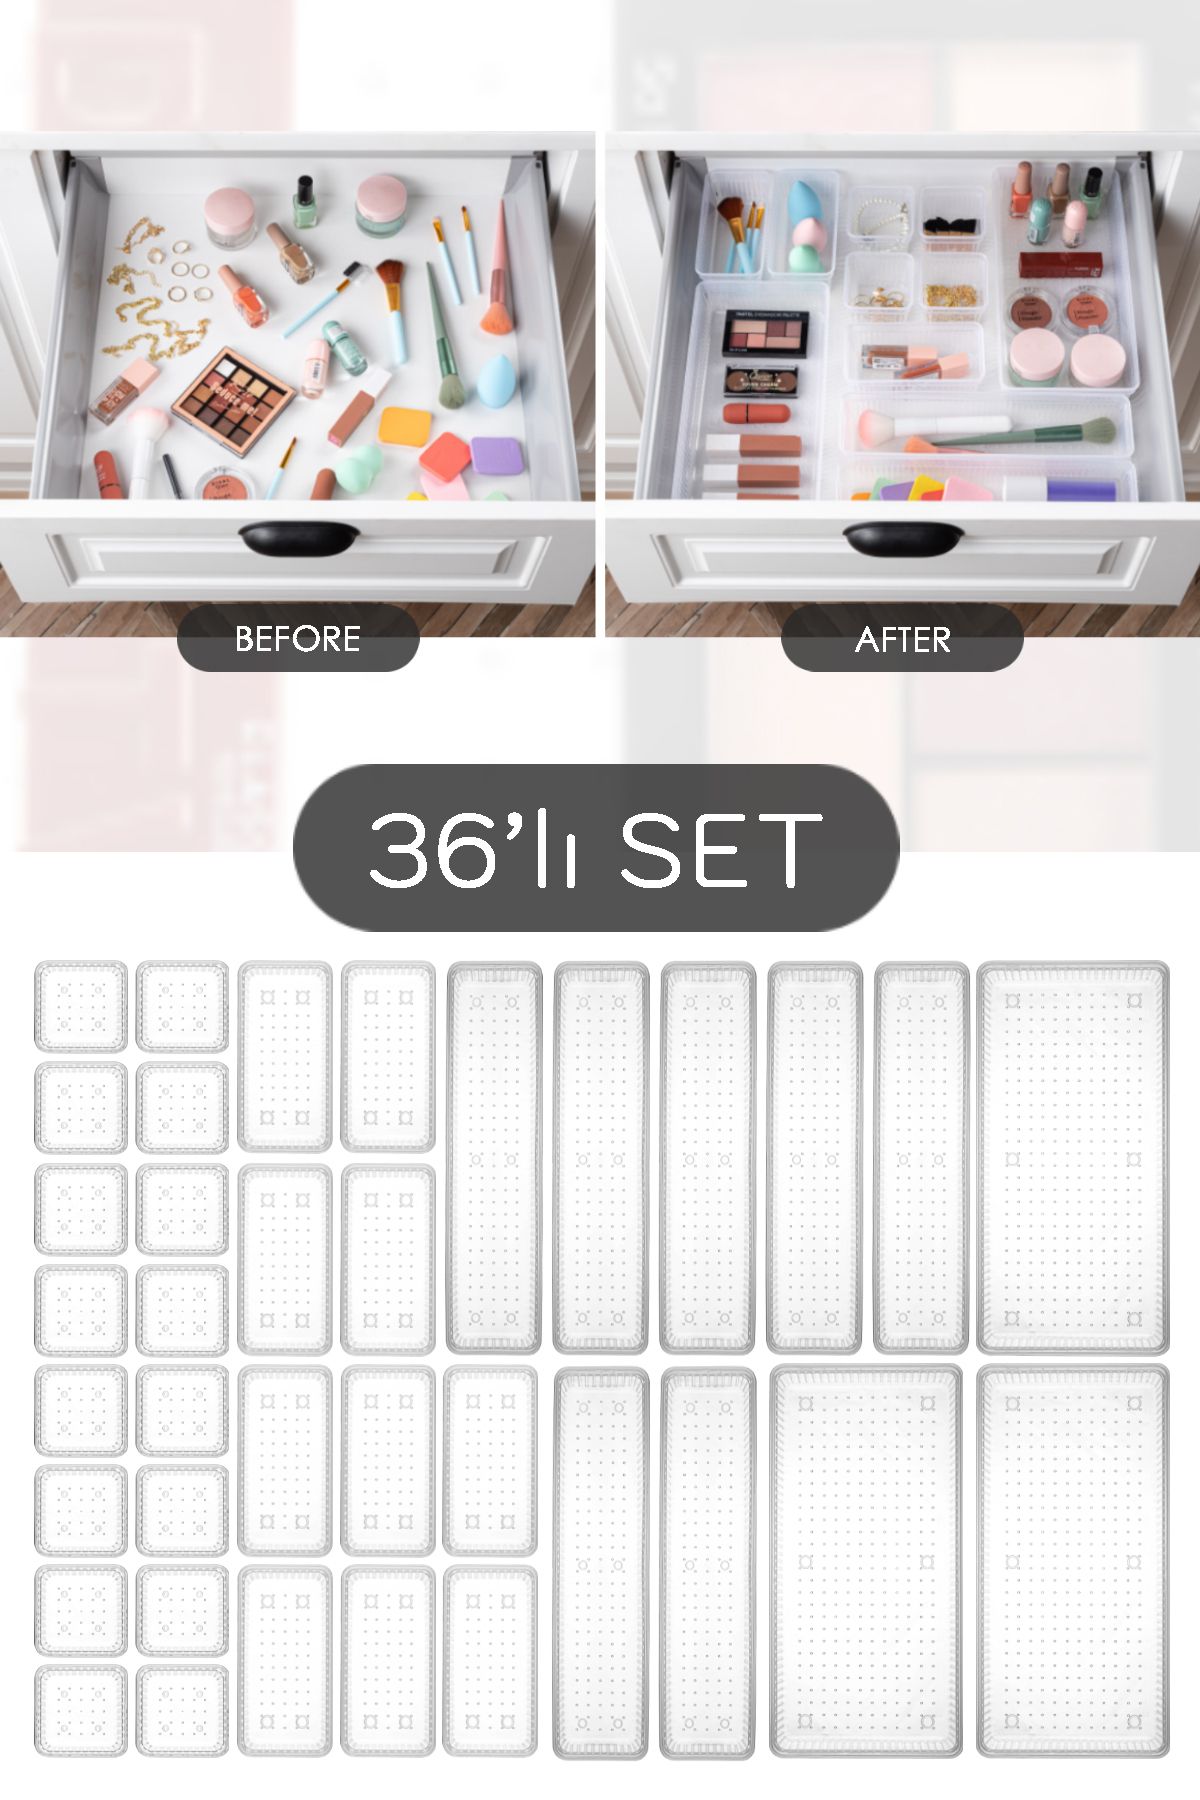 Meleni Home 36'lı Mega Set Modüler Çekmece İçi Organizer - Banyo Takı Aksesuar Düzenleyici Şeffaf